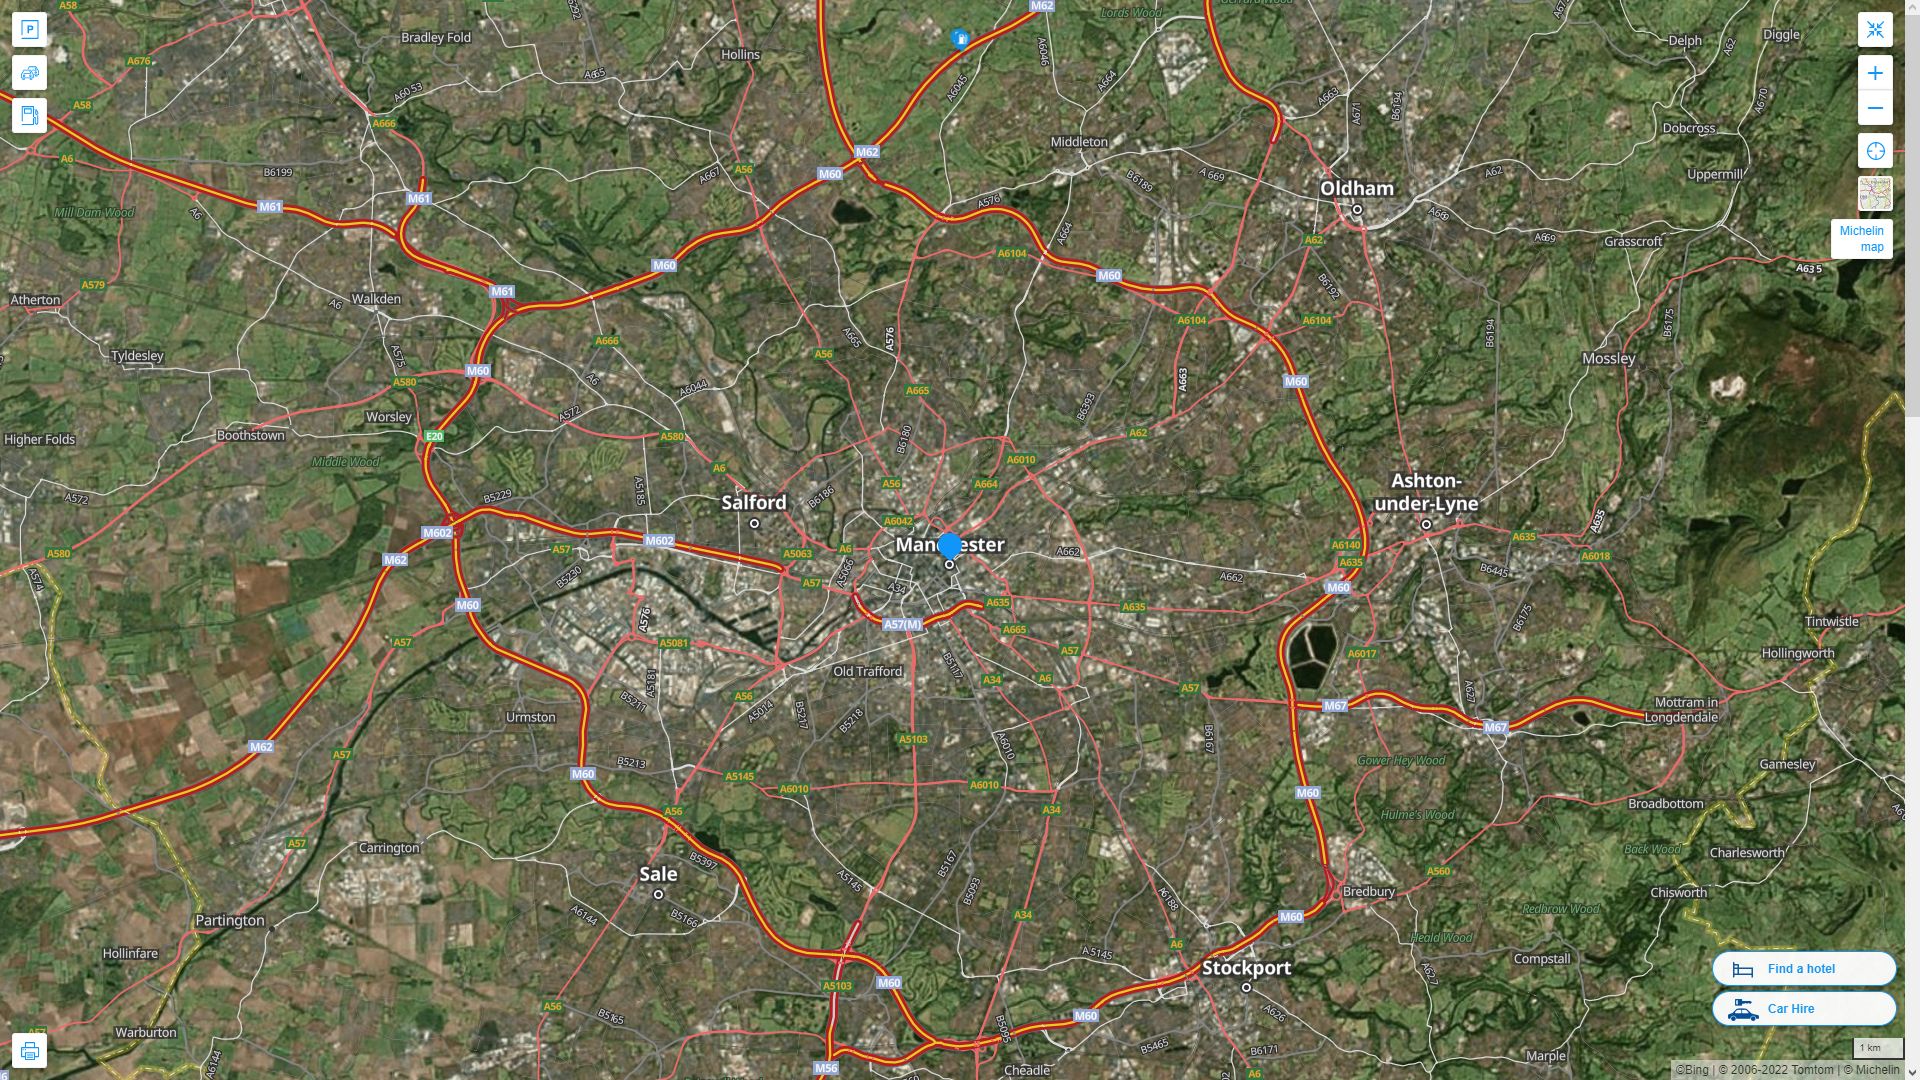 Manchester Royaume Uni Autoroute et carte routiere avec vue satellite